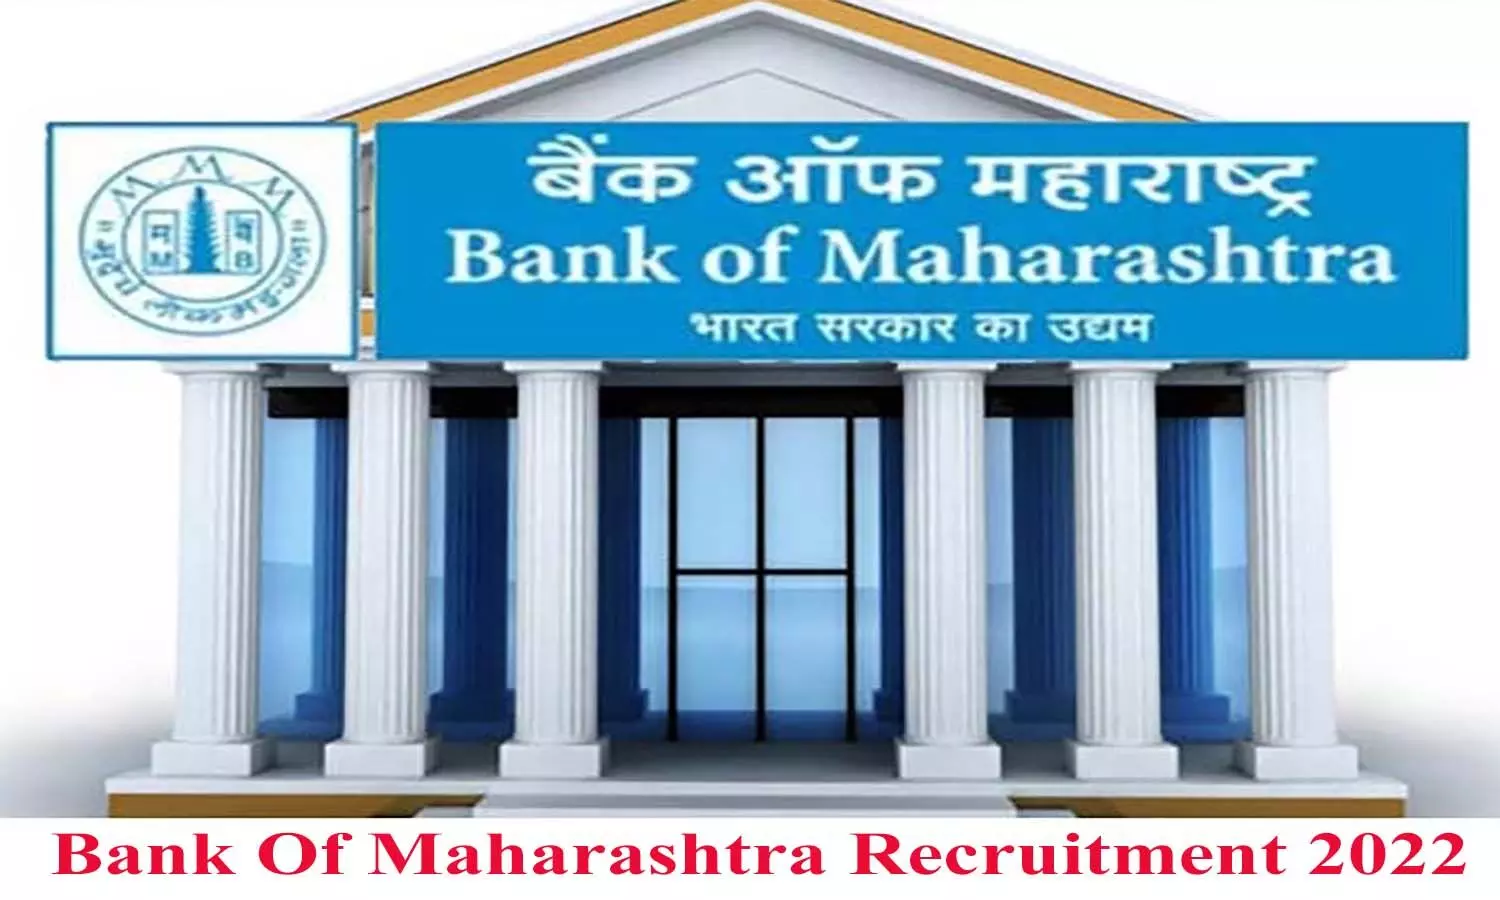 बैंक ऑफ महाराष्ट्र में ऑफिसर पदों के लिए निकली भर्ती, योग्यता व आवेदन शुल्क जान लें